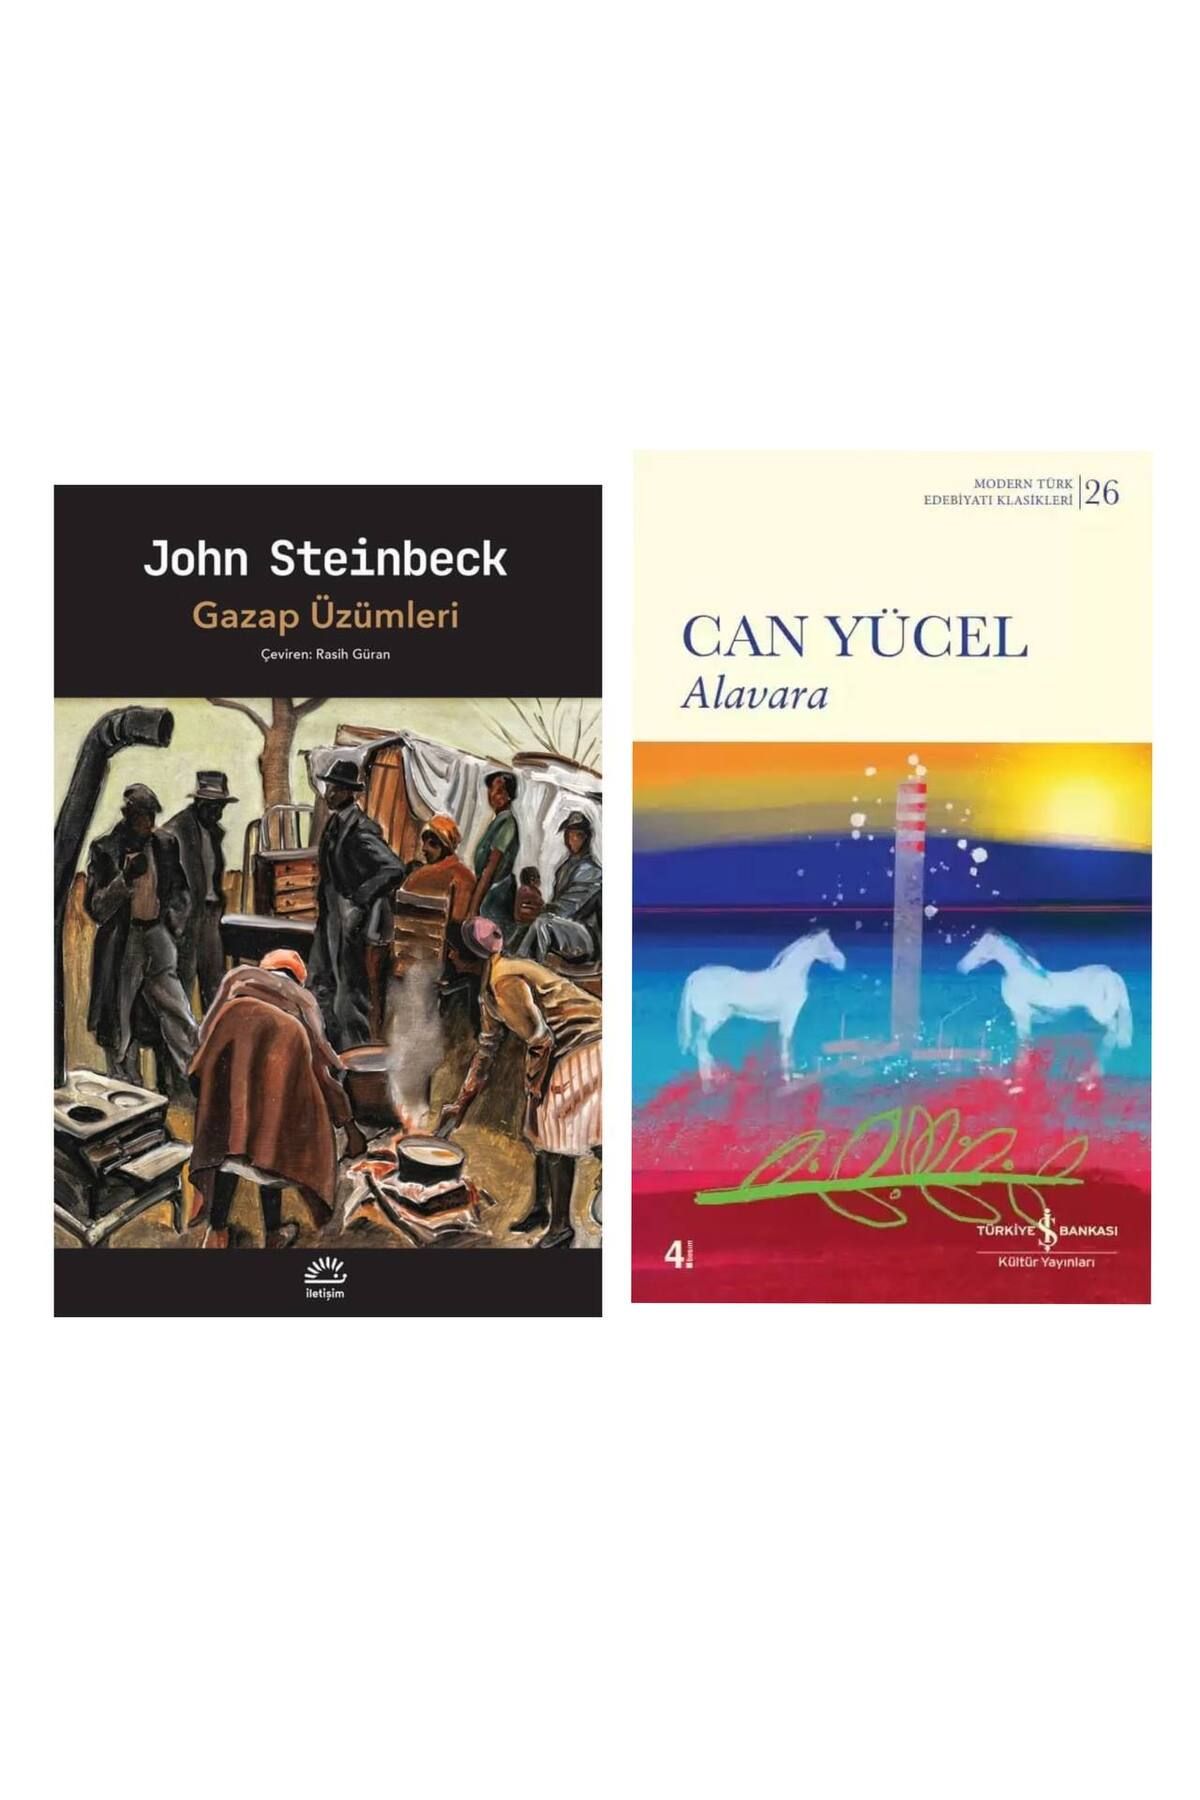 İletişim Yayınları Gazap Üzümleri - John Steinbeck - Alavara - Can Yücel